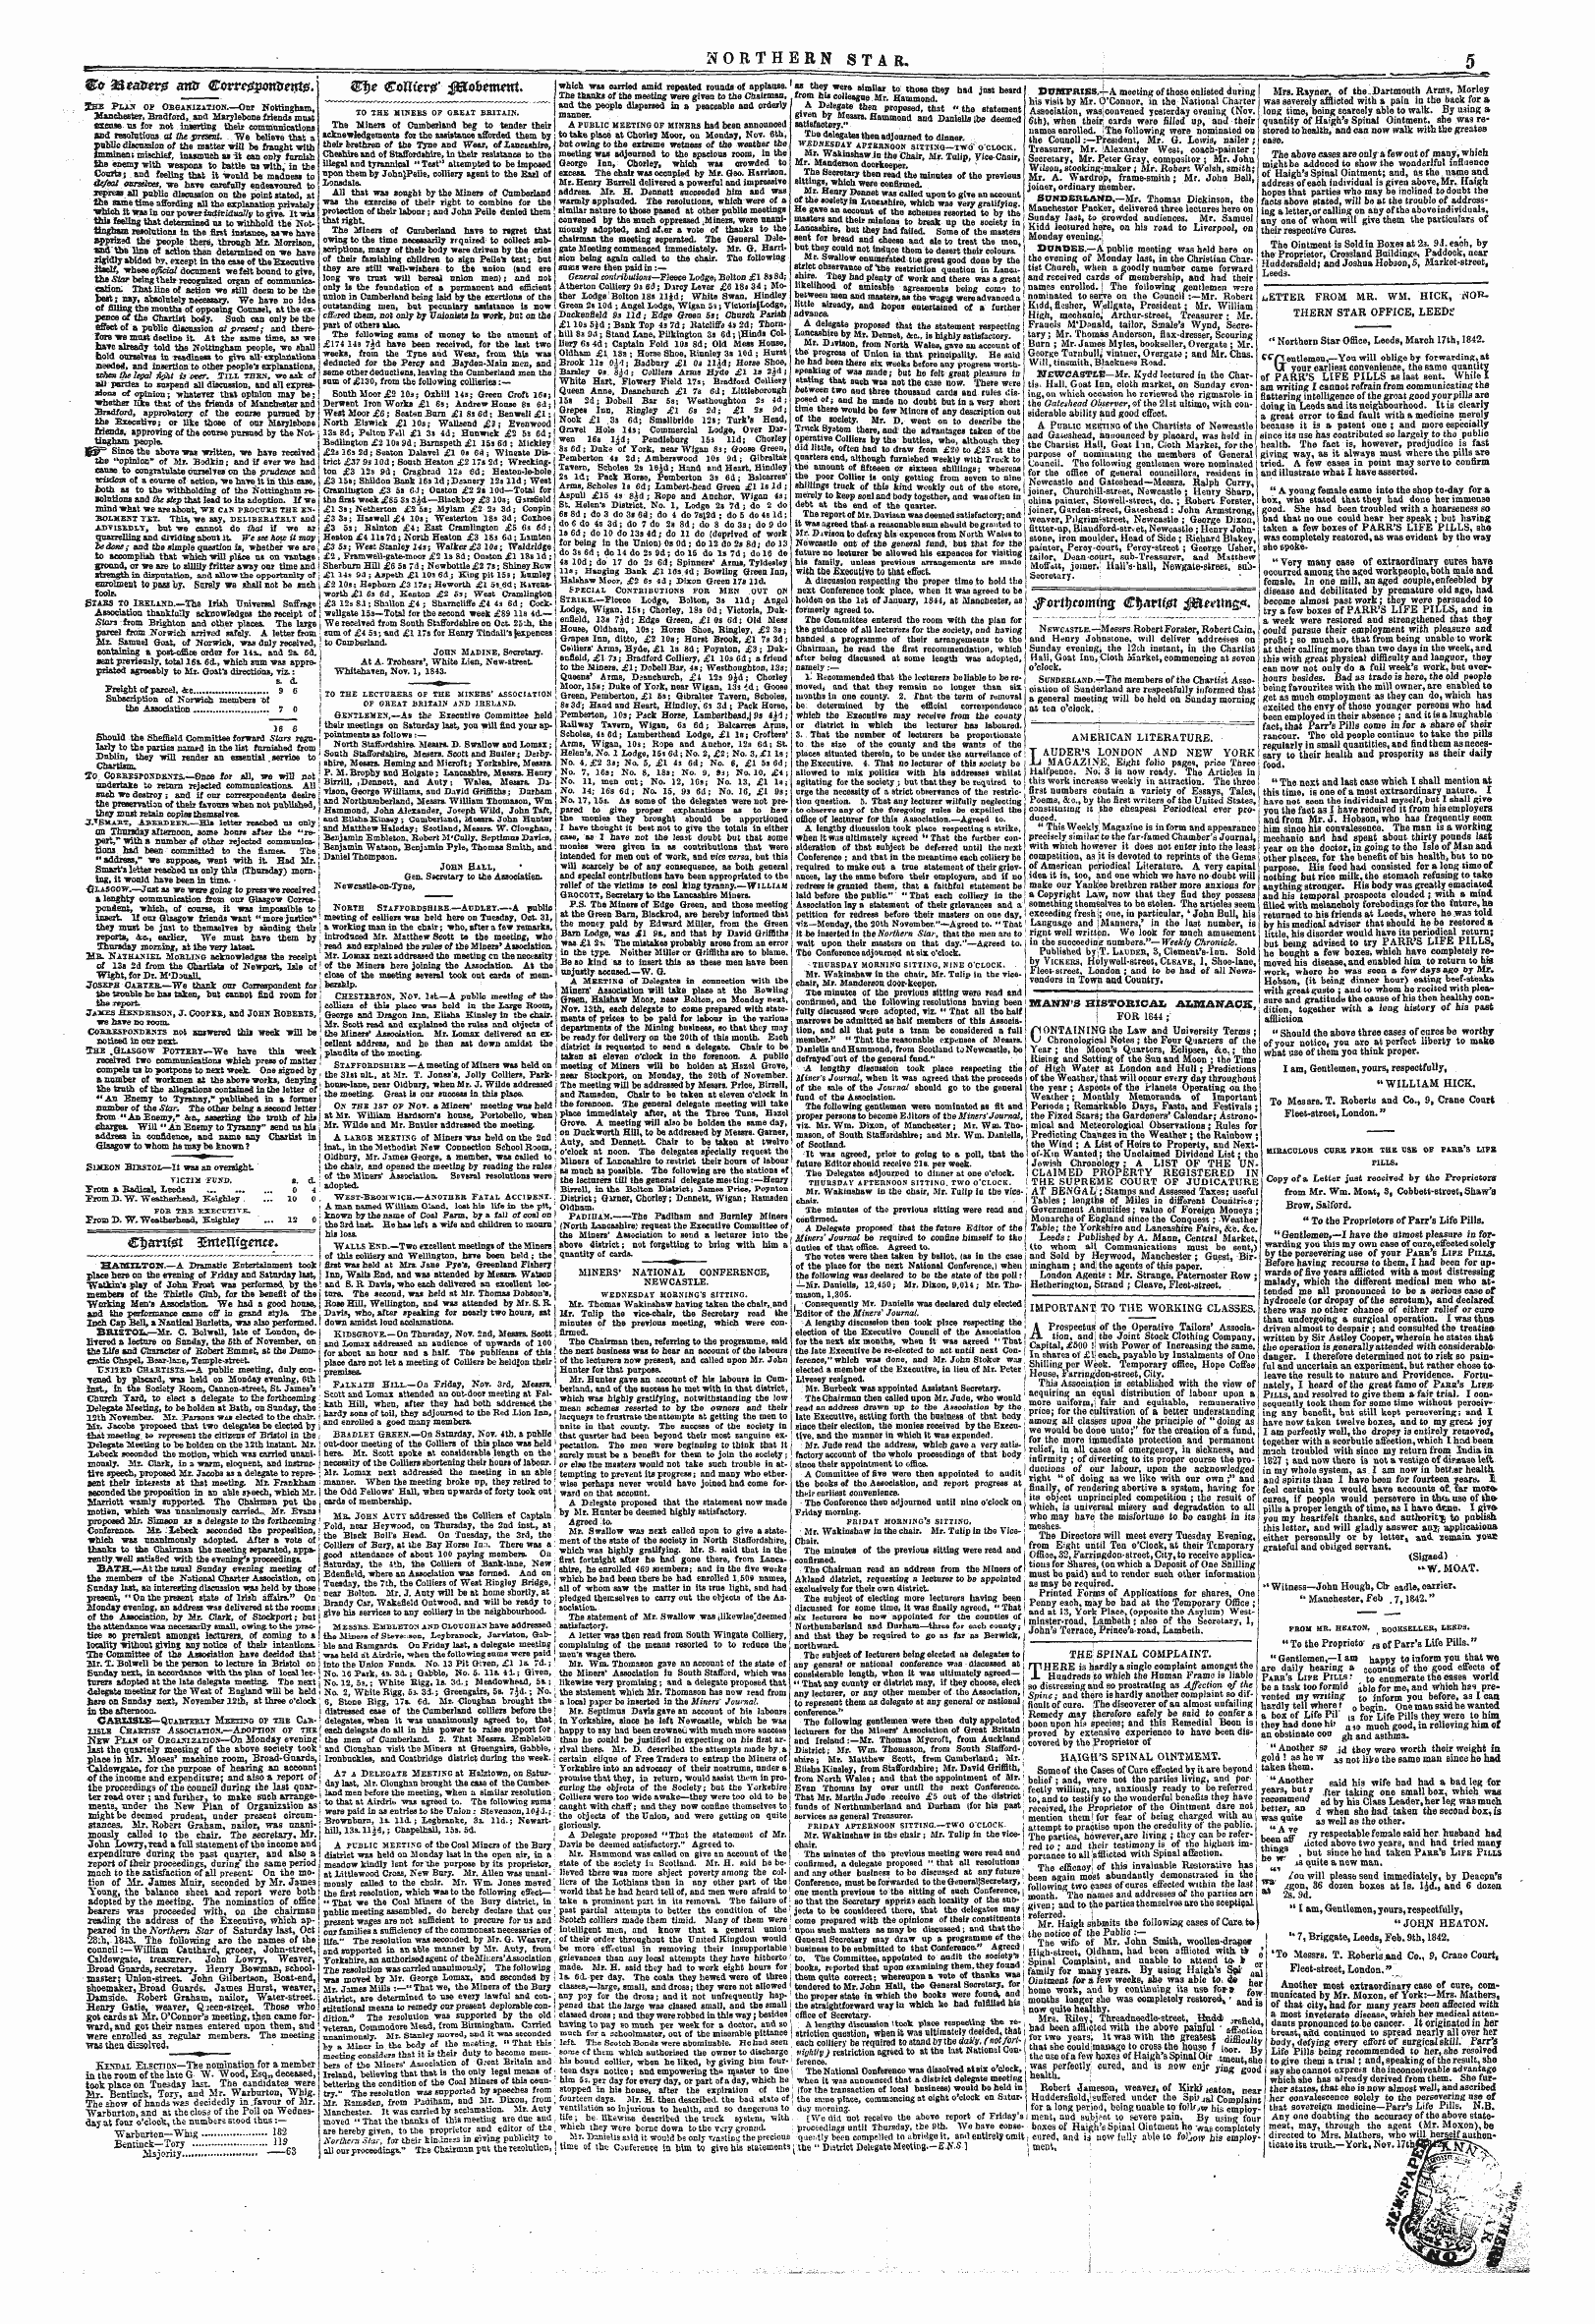 Northern Star (1837-1852): jS F Y, 3rd edition - Jfovit Ycomins (Bfyattfet J$Tartmg&Lt;*.